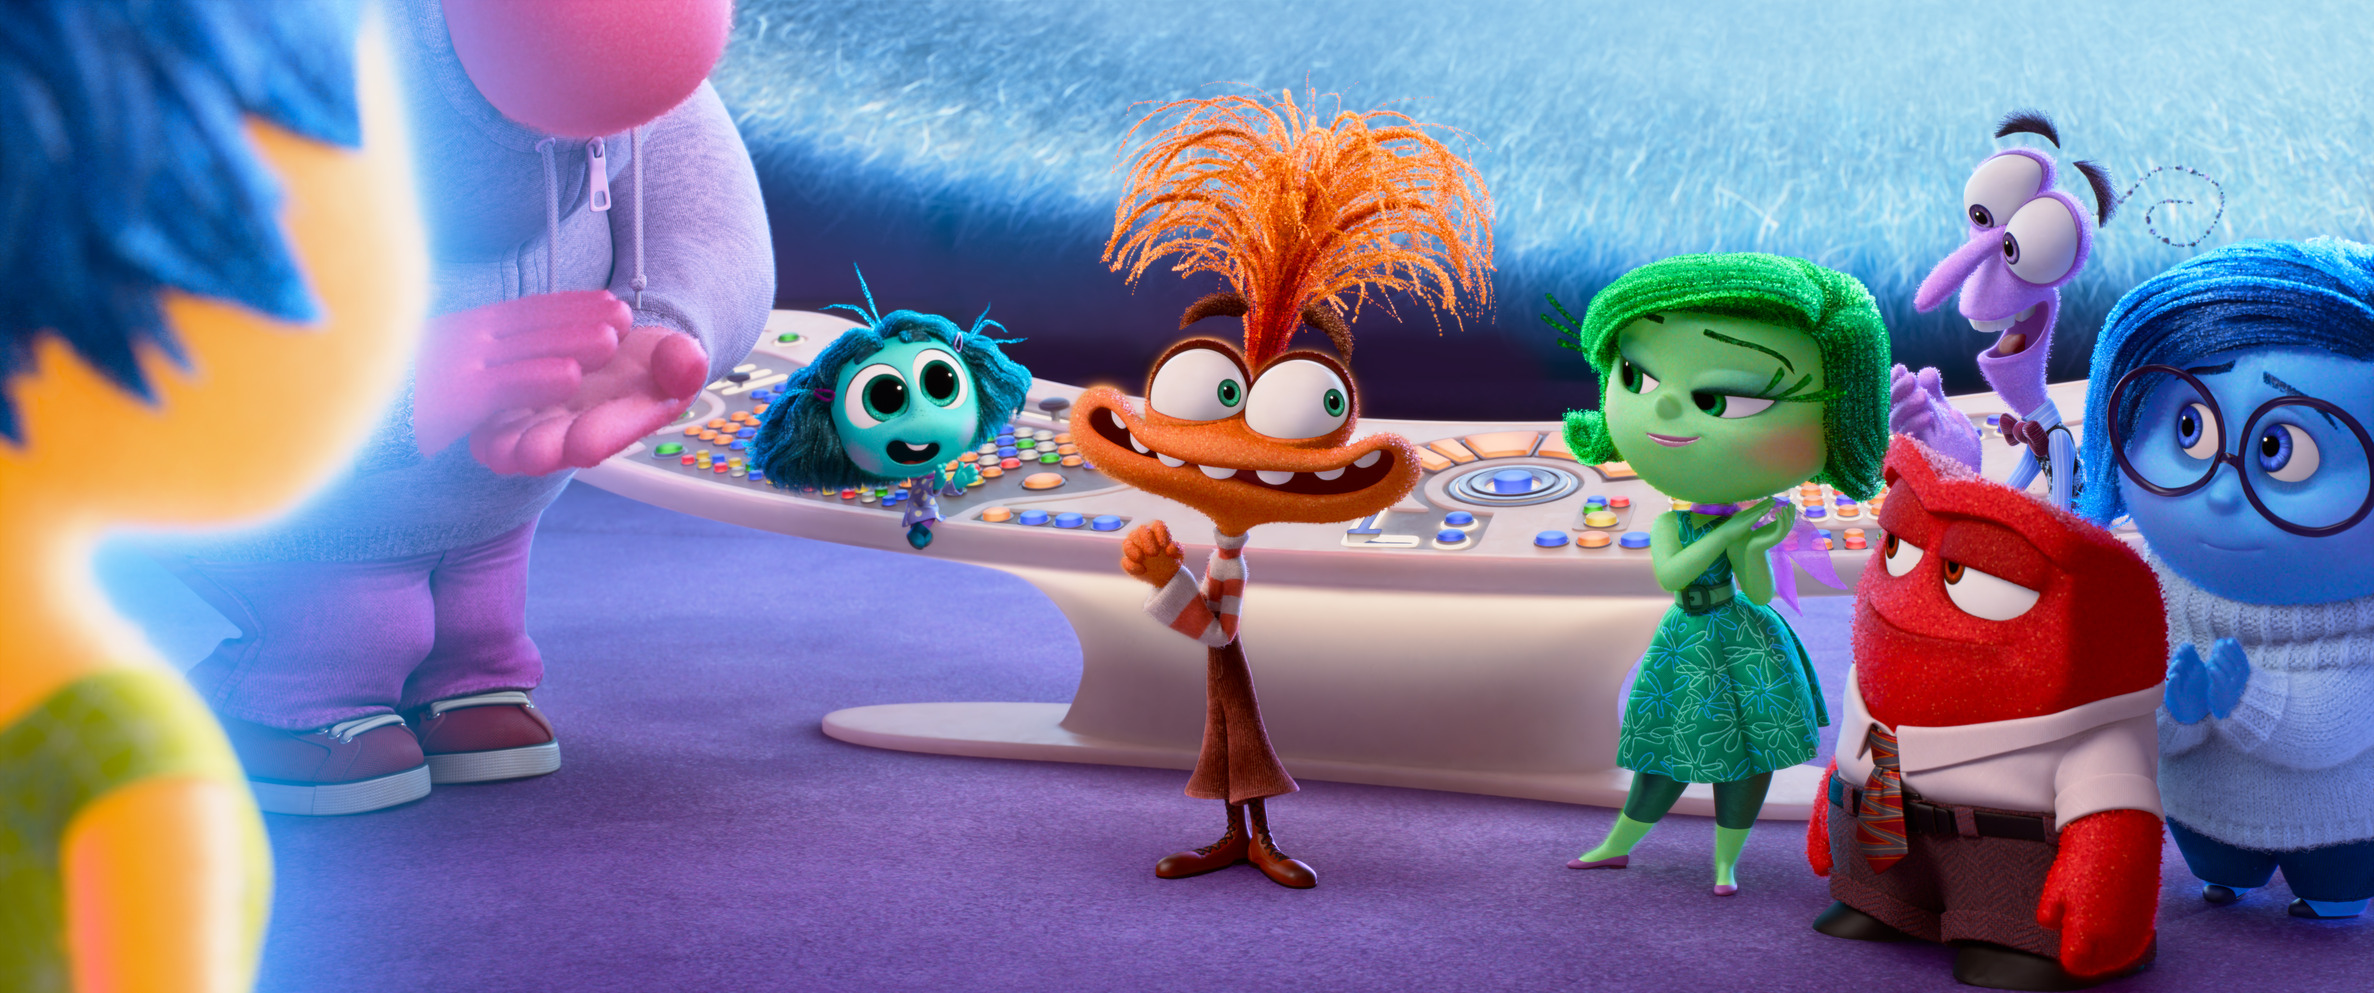 Inside Out 2, il nuovo film Disney e Pixar è il film d'animazione con il più alto incasso di sempre in Italia